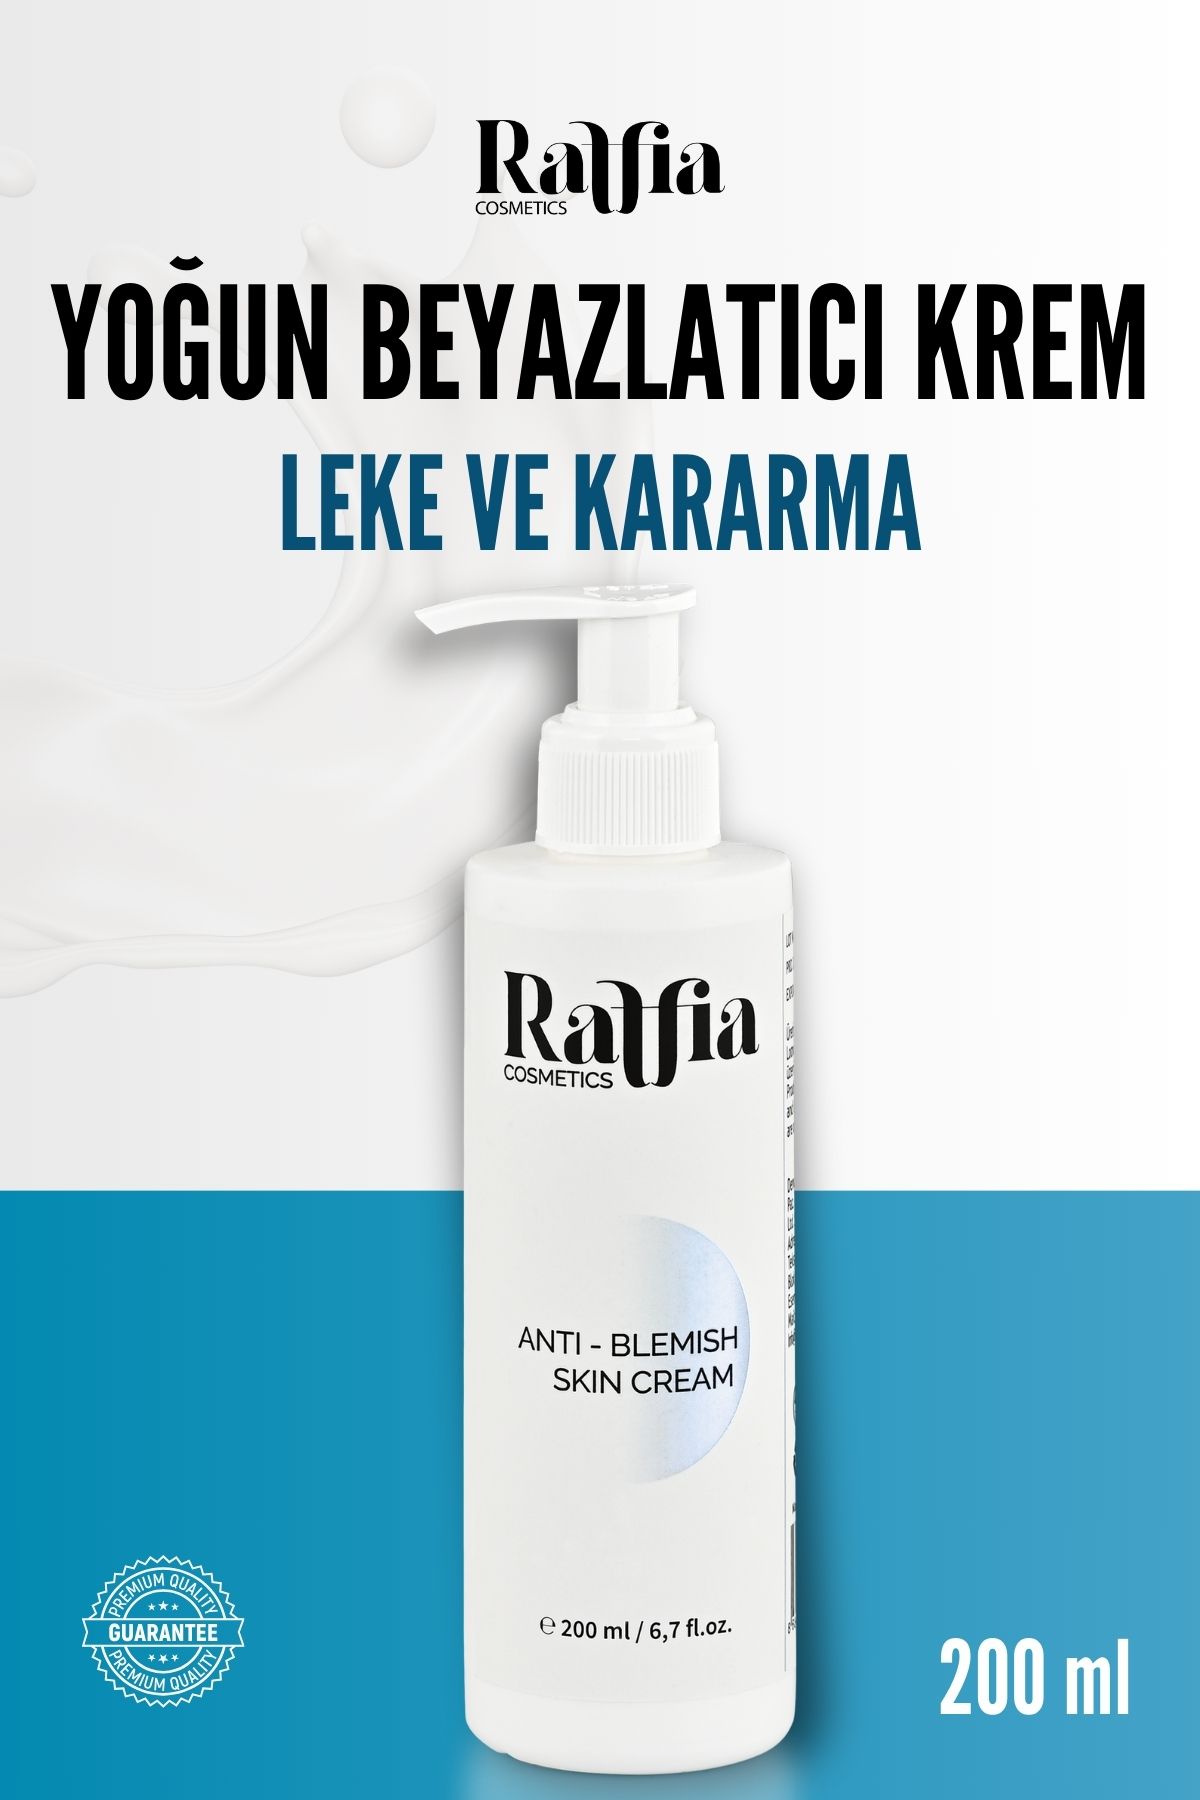 Raffia Cosmetics Leke Ve Kararma Karşıtı Beyazlatıcı Krem 200ml Cilt, Yüz Ve Genital Bölge Beyazlatıcı Krem